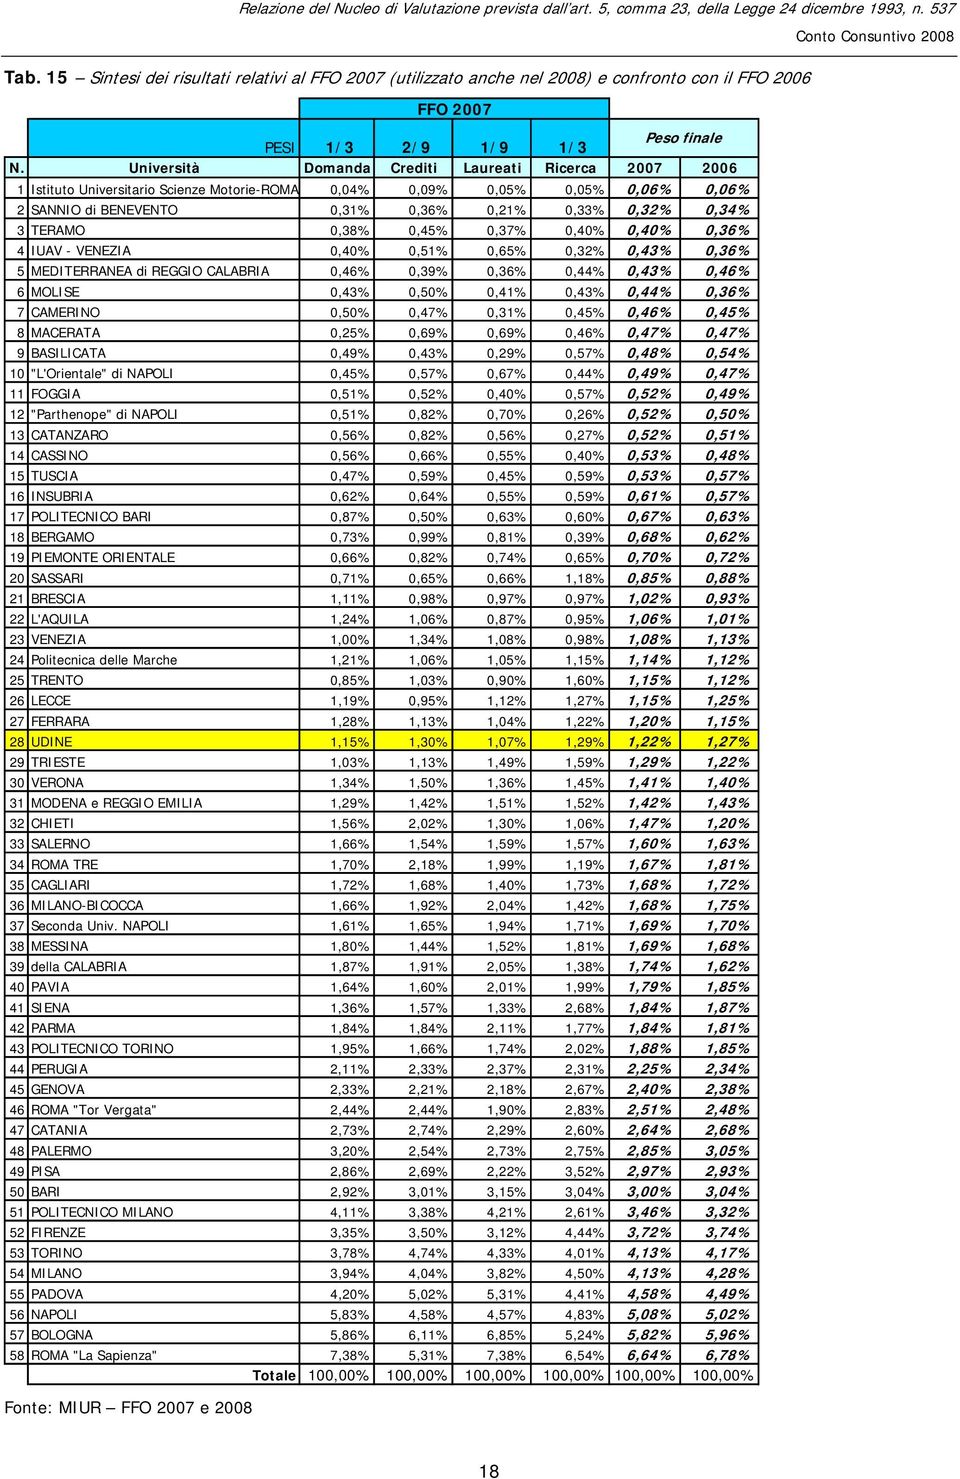 TERAMO 0,38% 0,45% 0,37% 0,40% 0,40% 0,36% 4 IUAV - VENEZIA 0,40% 0,51% 0,65% 0,32% 0,43% 0,36% 5 MEDITERRANEA di REGGIO CALABRIA 0,46% 0,39% 0,36% 0,44% 0,43% 0,46% 6 MOLISE 0,43% 0,50% 0,41% 0,43%